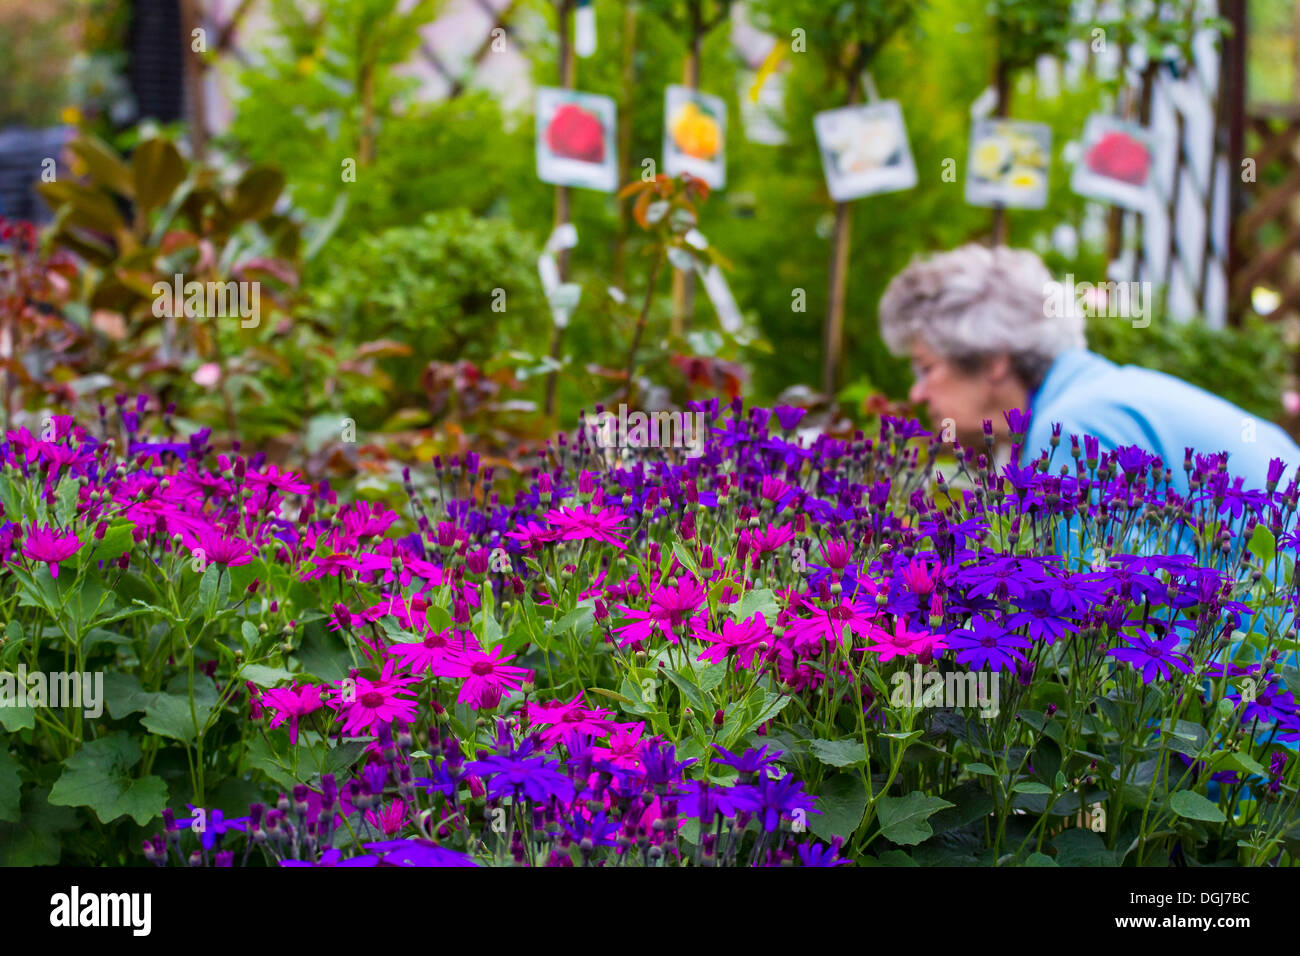 Auswahl an farbenfrohen Pflanzen in ein Gartencenter von einer Kundin untersucht. Stockfoto